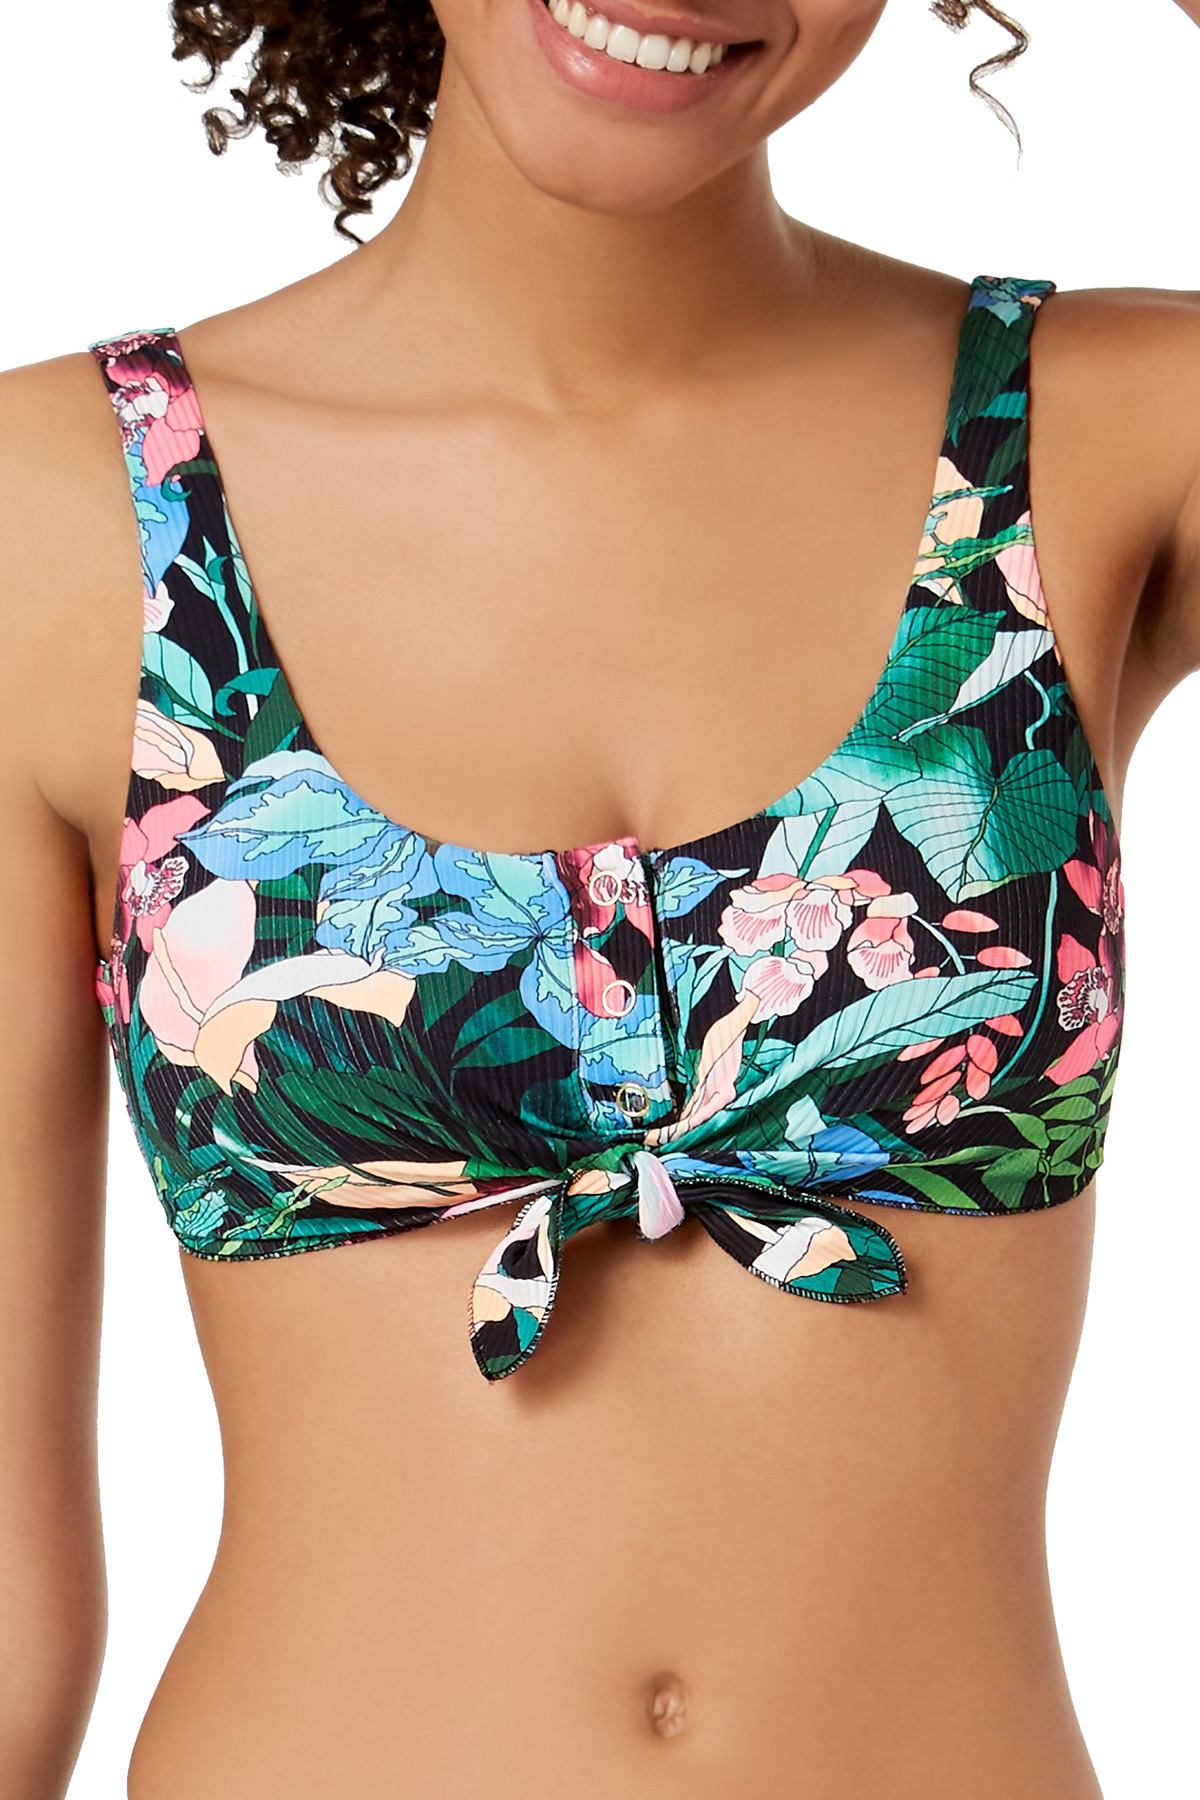 Body Glove Multicolor Printed Selva Tie Front Bikini Top